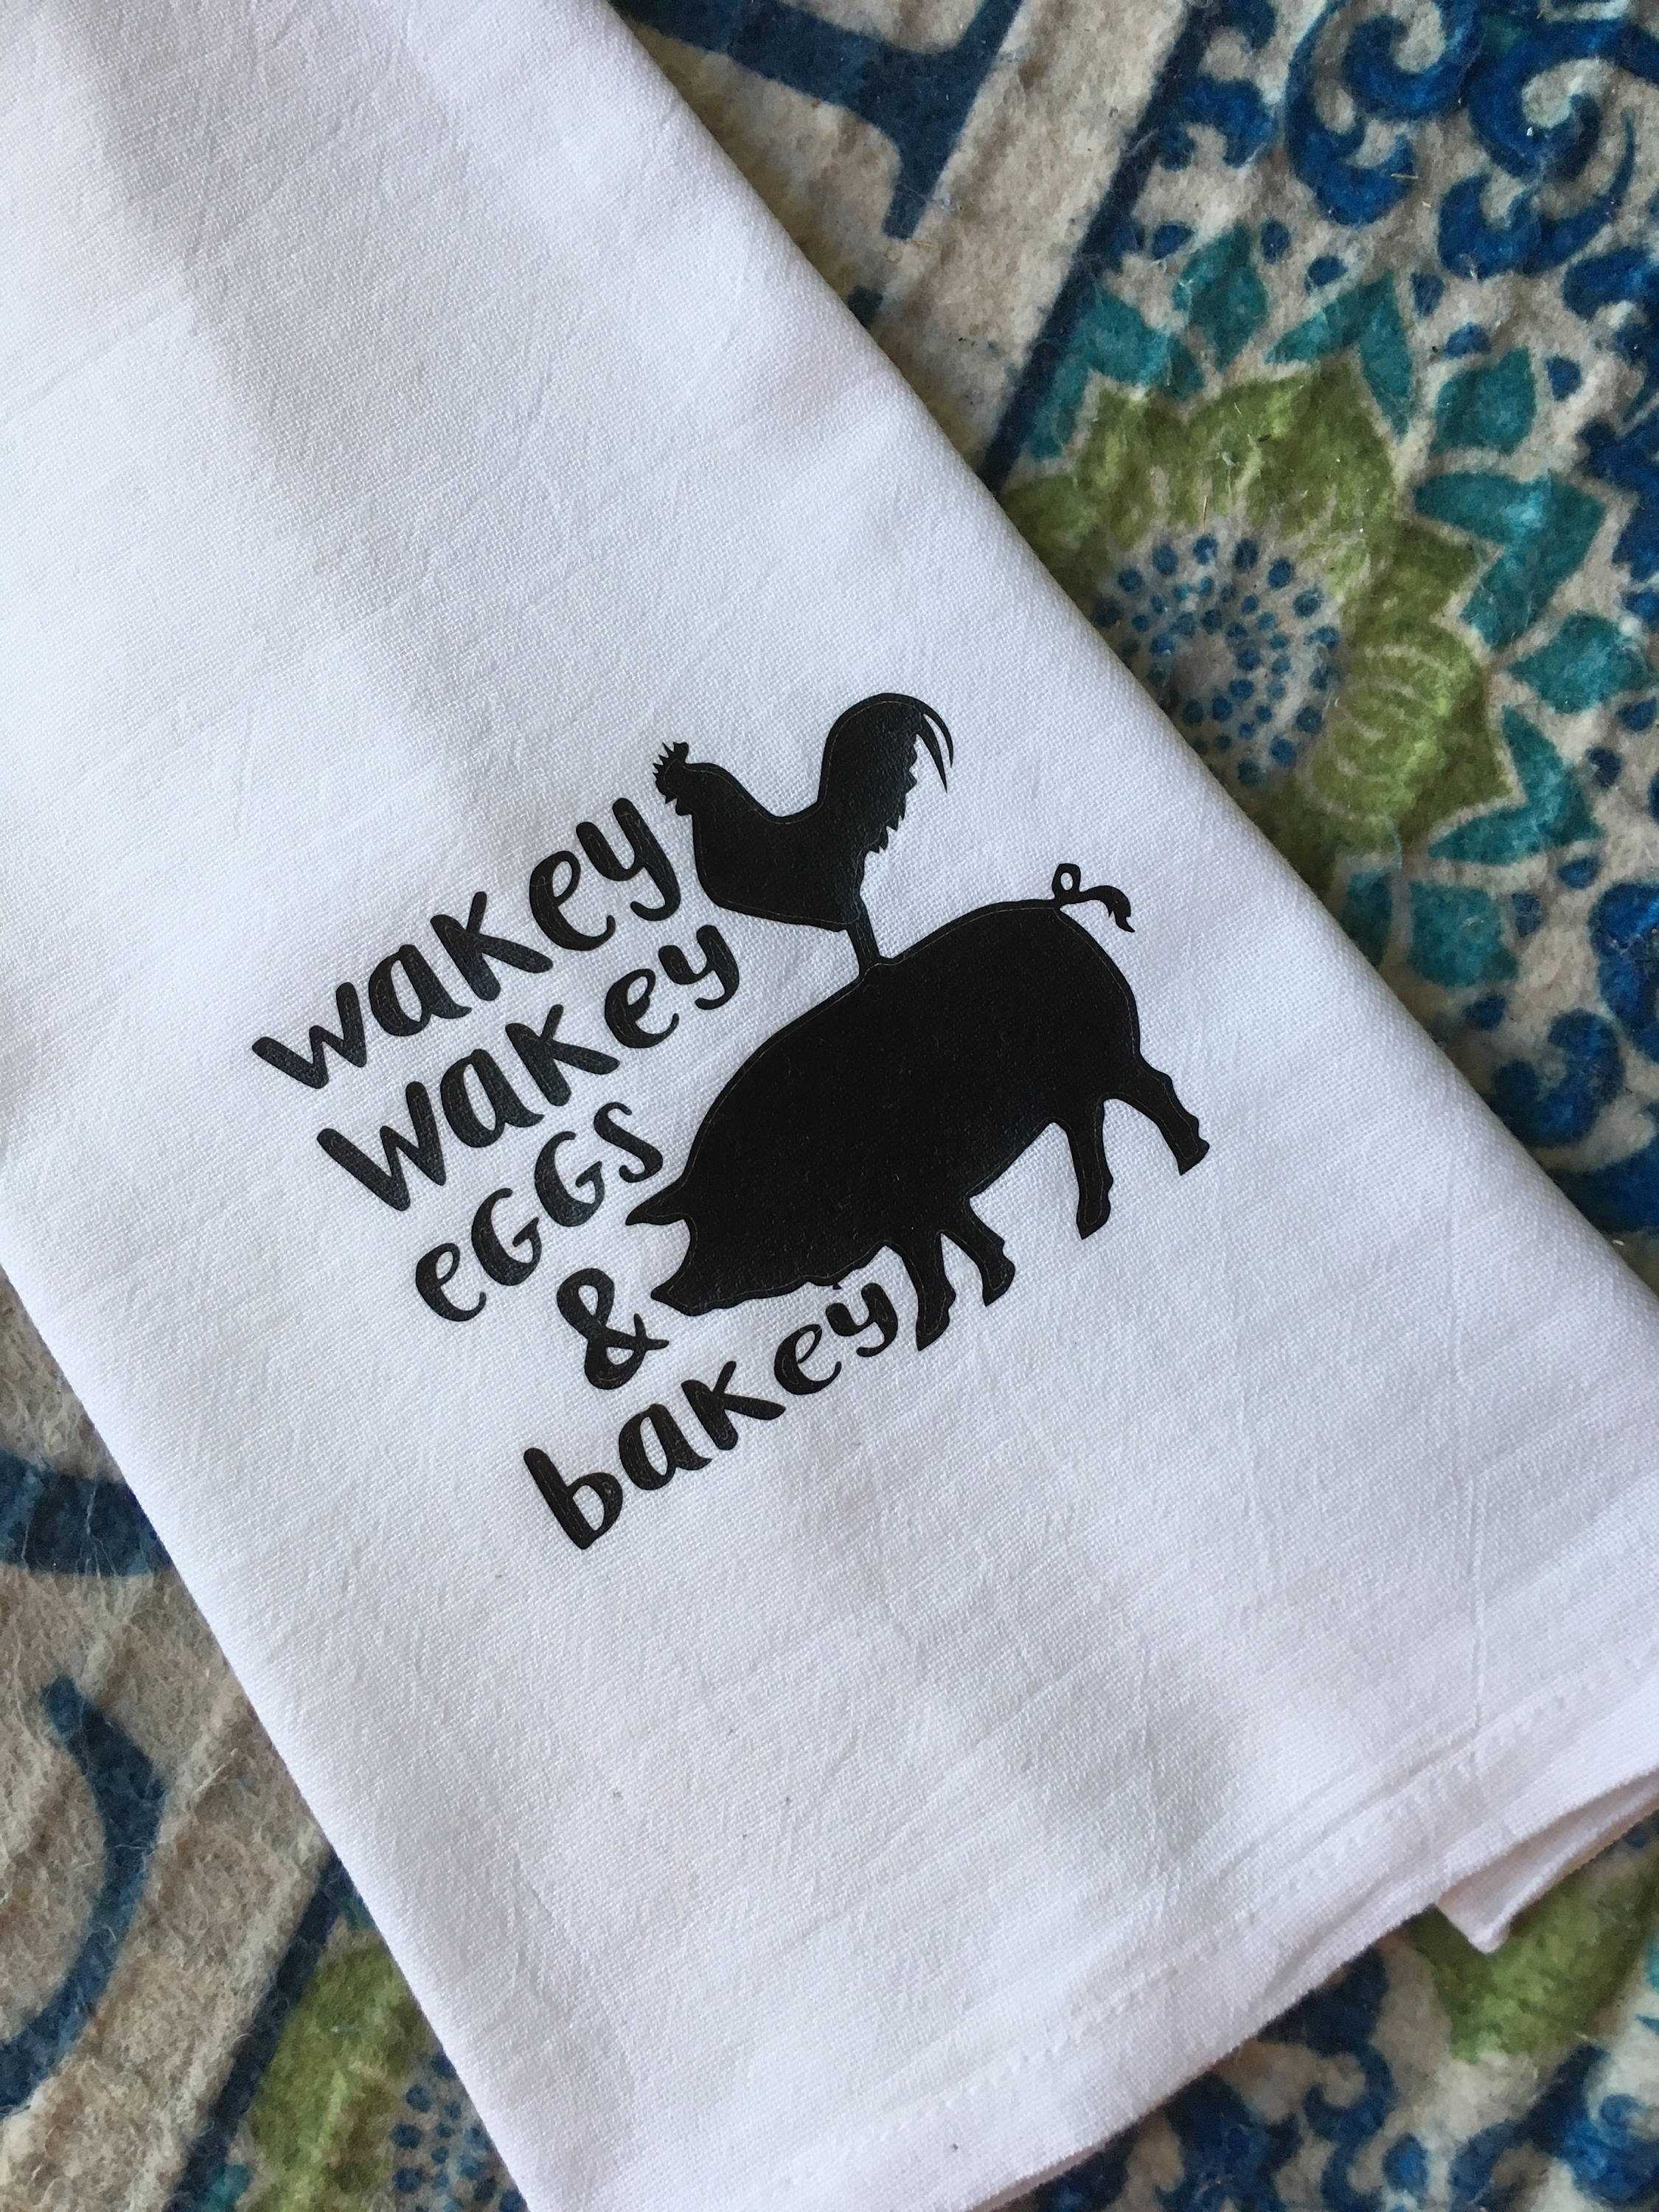 Wakey Wakey Eggs and Bakey Tea Towel